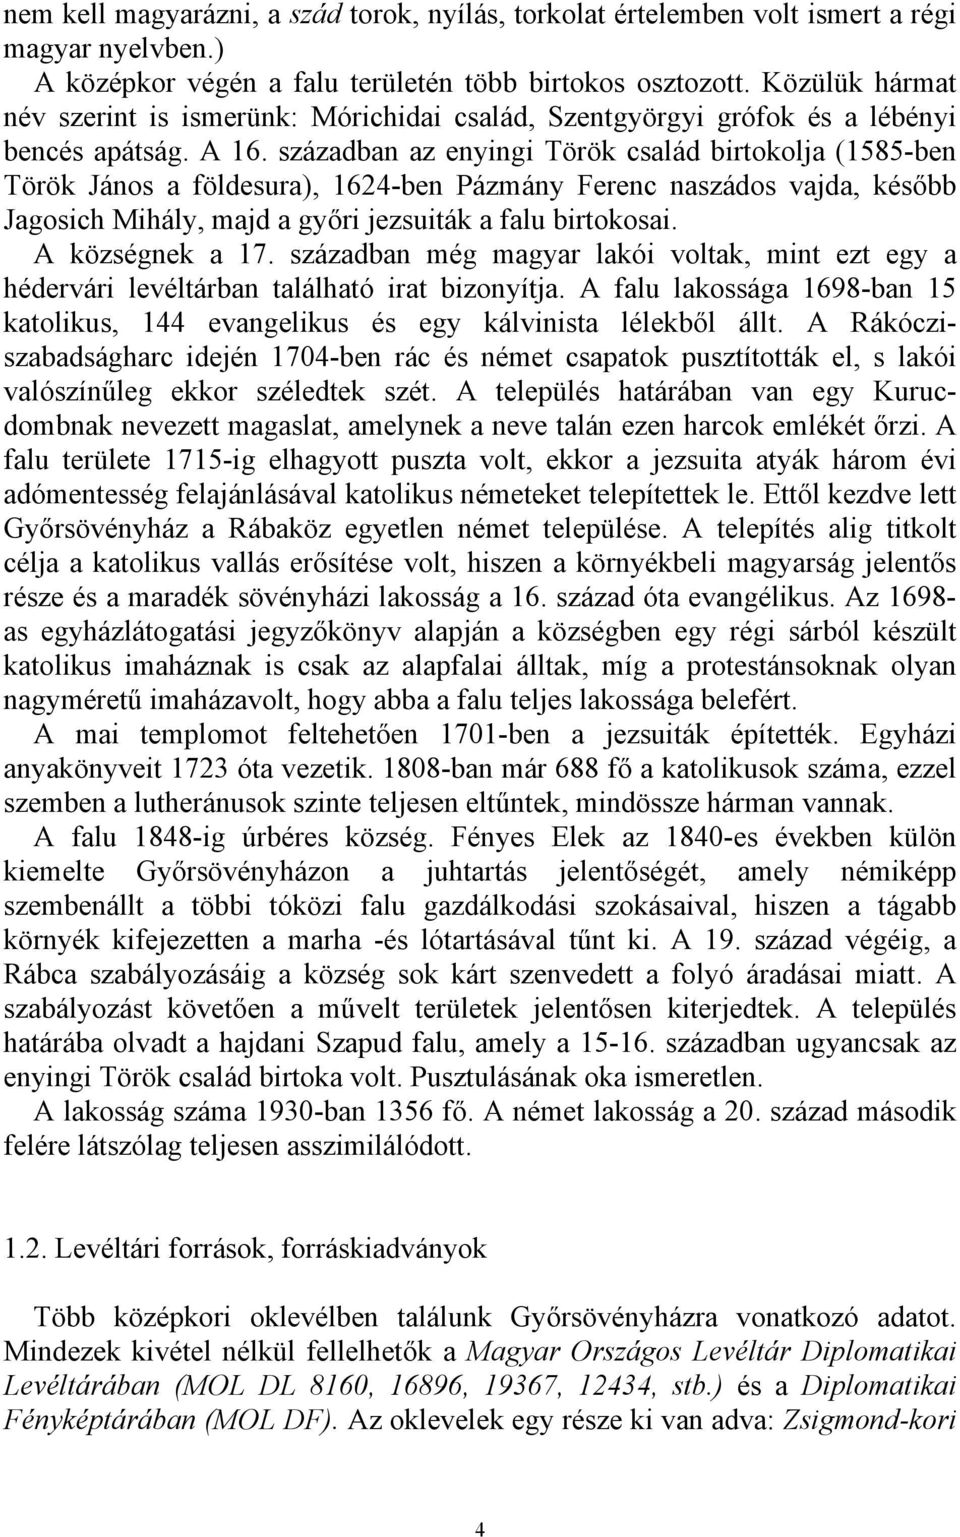 században az enyingi Török család birtokolja (1585-ben Török János a földesura), 1624-ben Pázmány Ferenc naszádos vajda, később Jagosich Mihály, majd a győri jezsuiták a falu birtokosai.